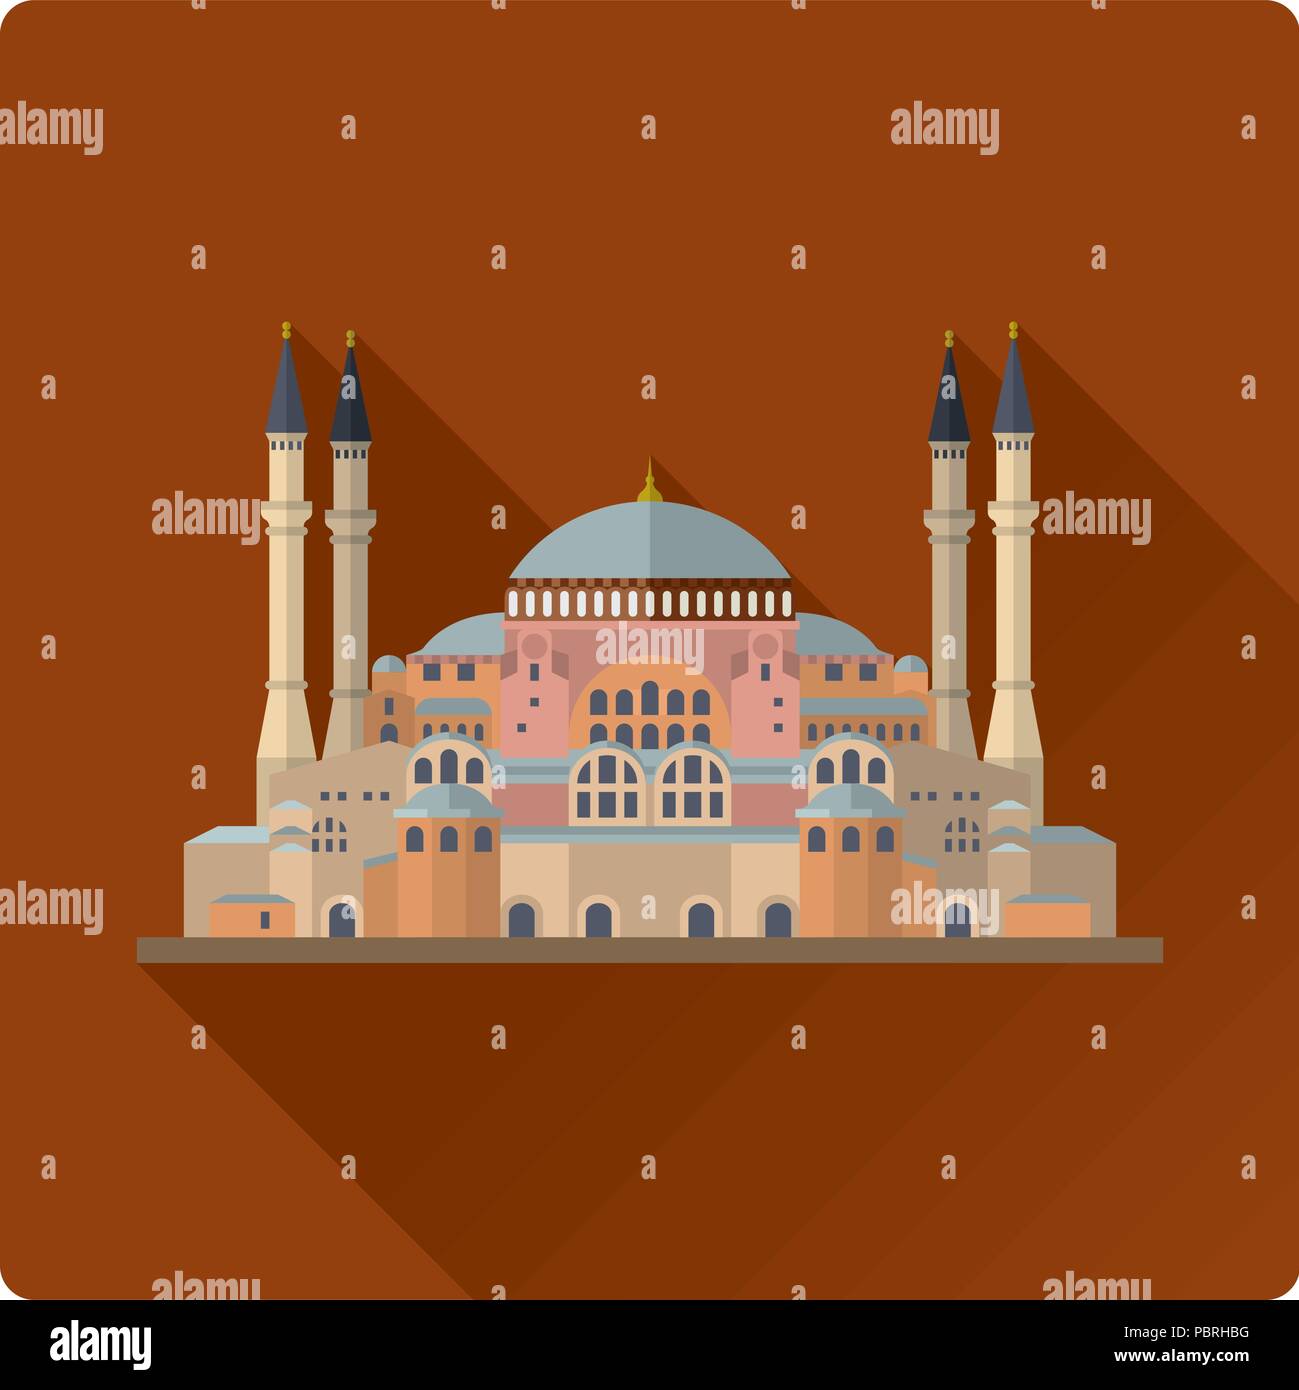 Flache Bauweise lange Schatten Vector Illustration der Hagia Sophia Moschee, Kirche und Museum in Istanbul, Türkei Stock Vektor